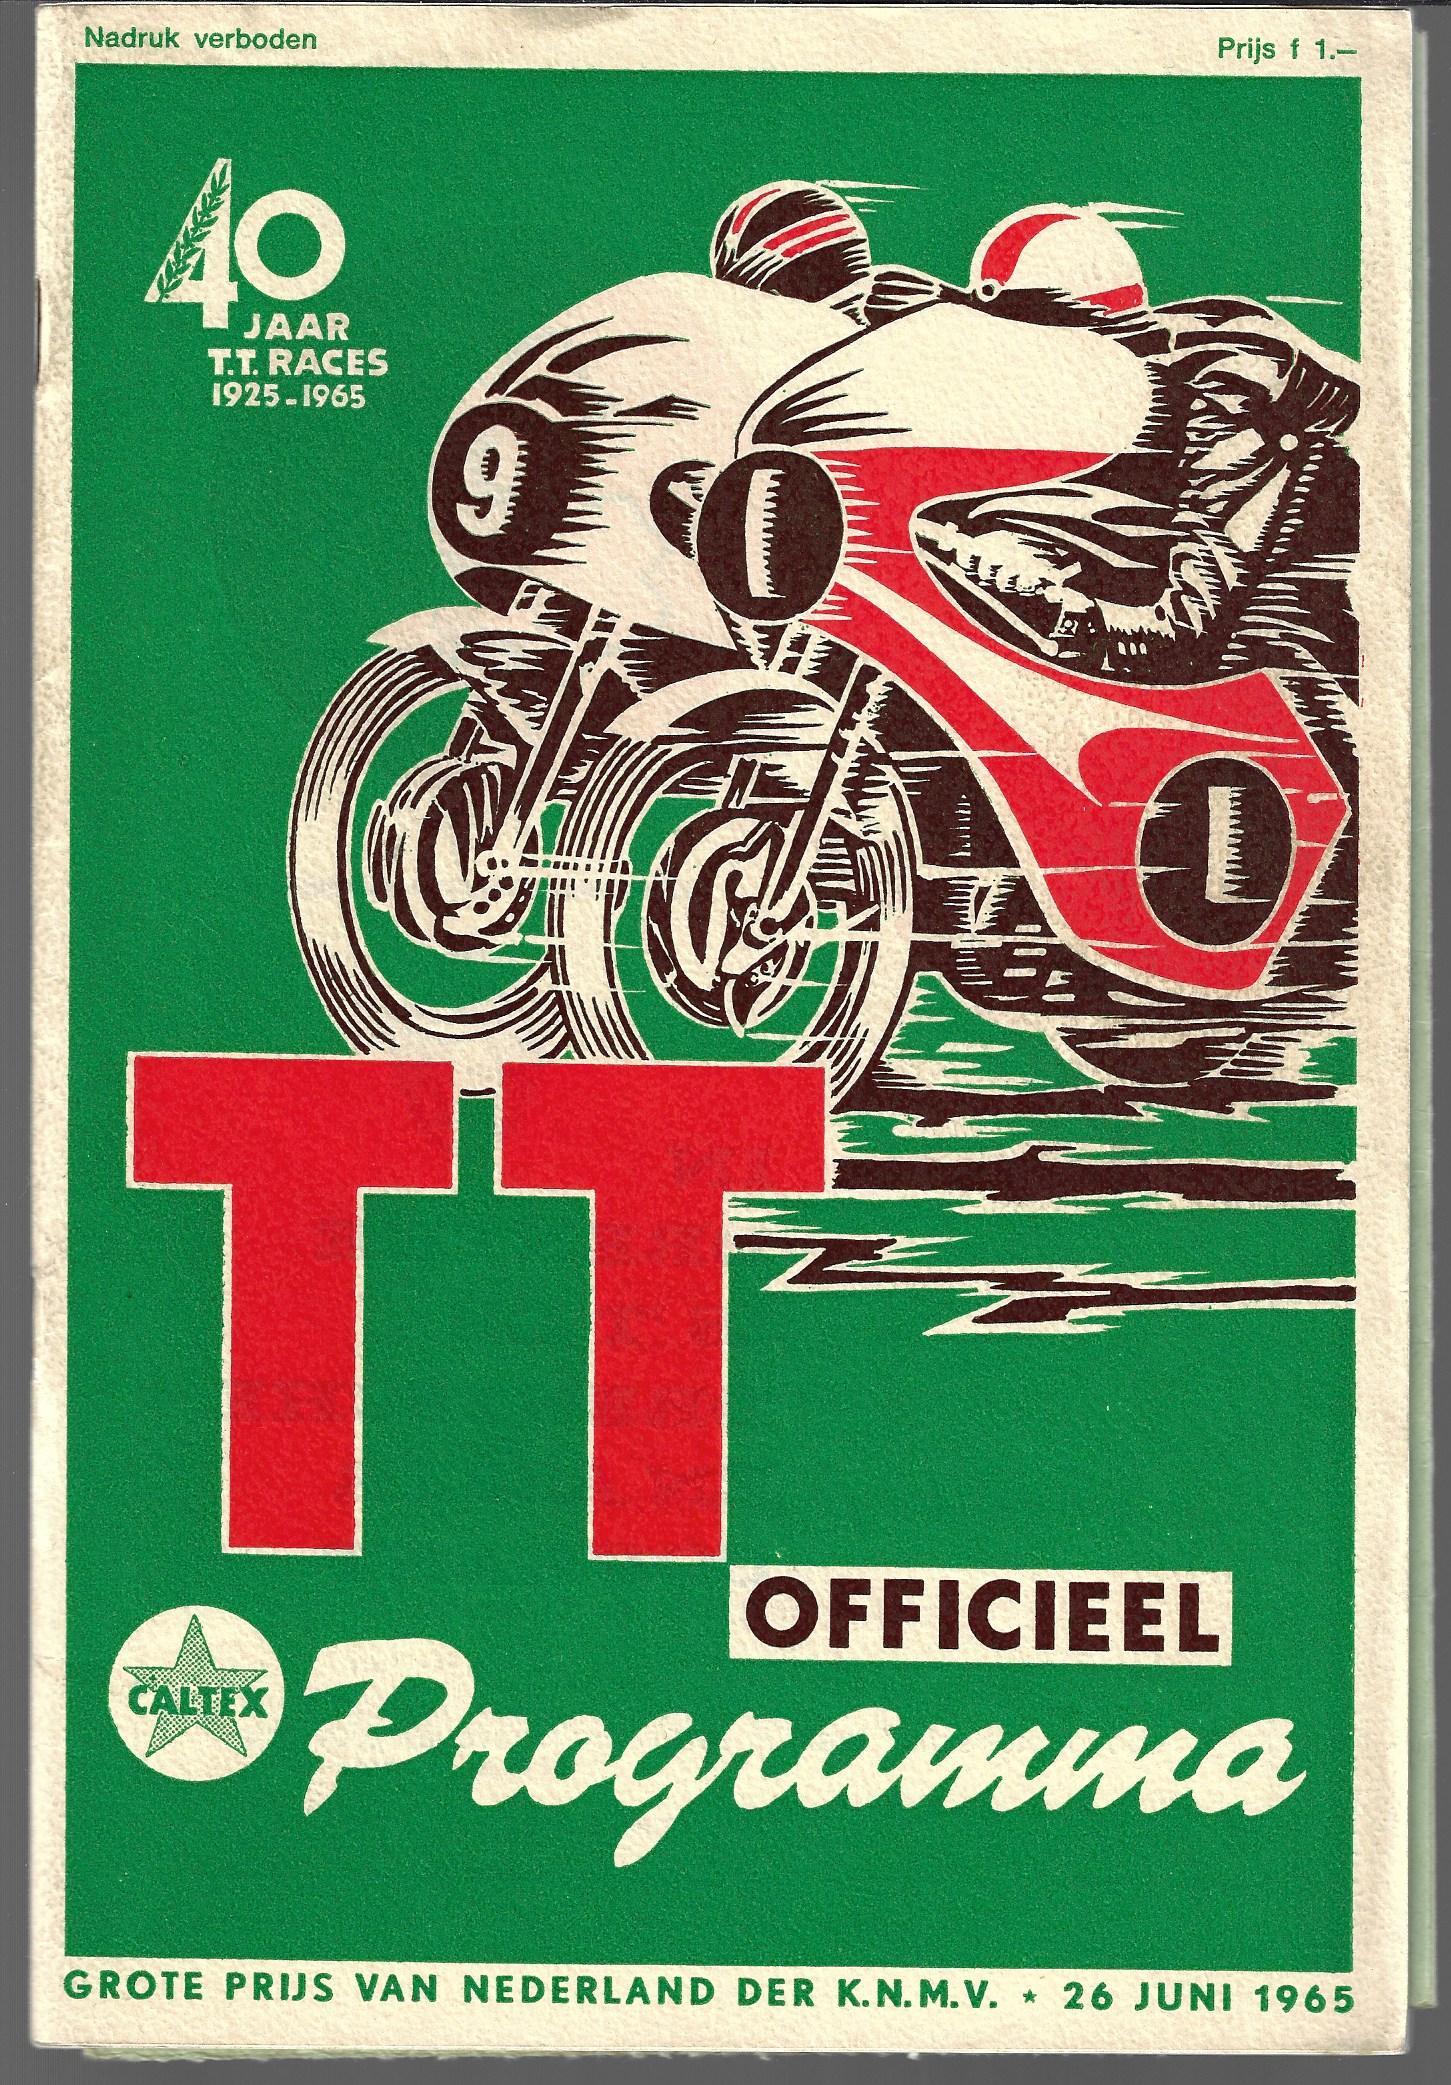  - TT Assen Officieel programma 26 juni 1965 -Grote Prijs van Nederland der K.N.M.V. 40 jaar TT races 1925-1965